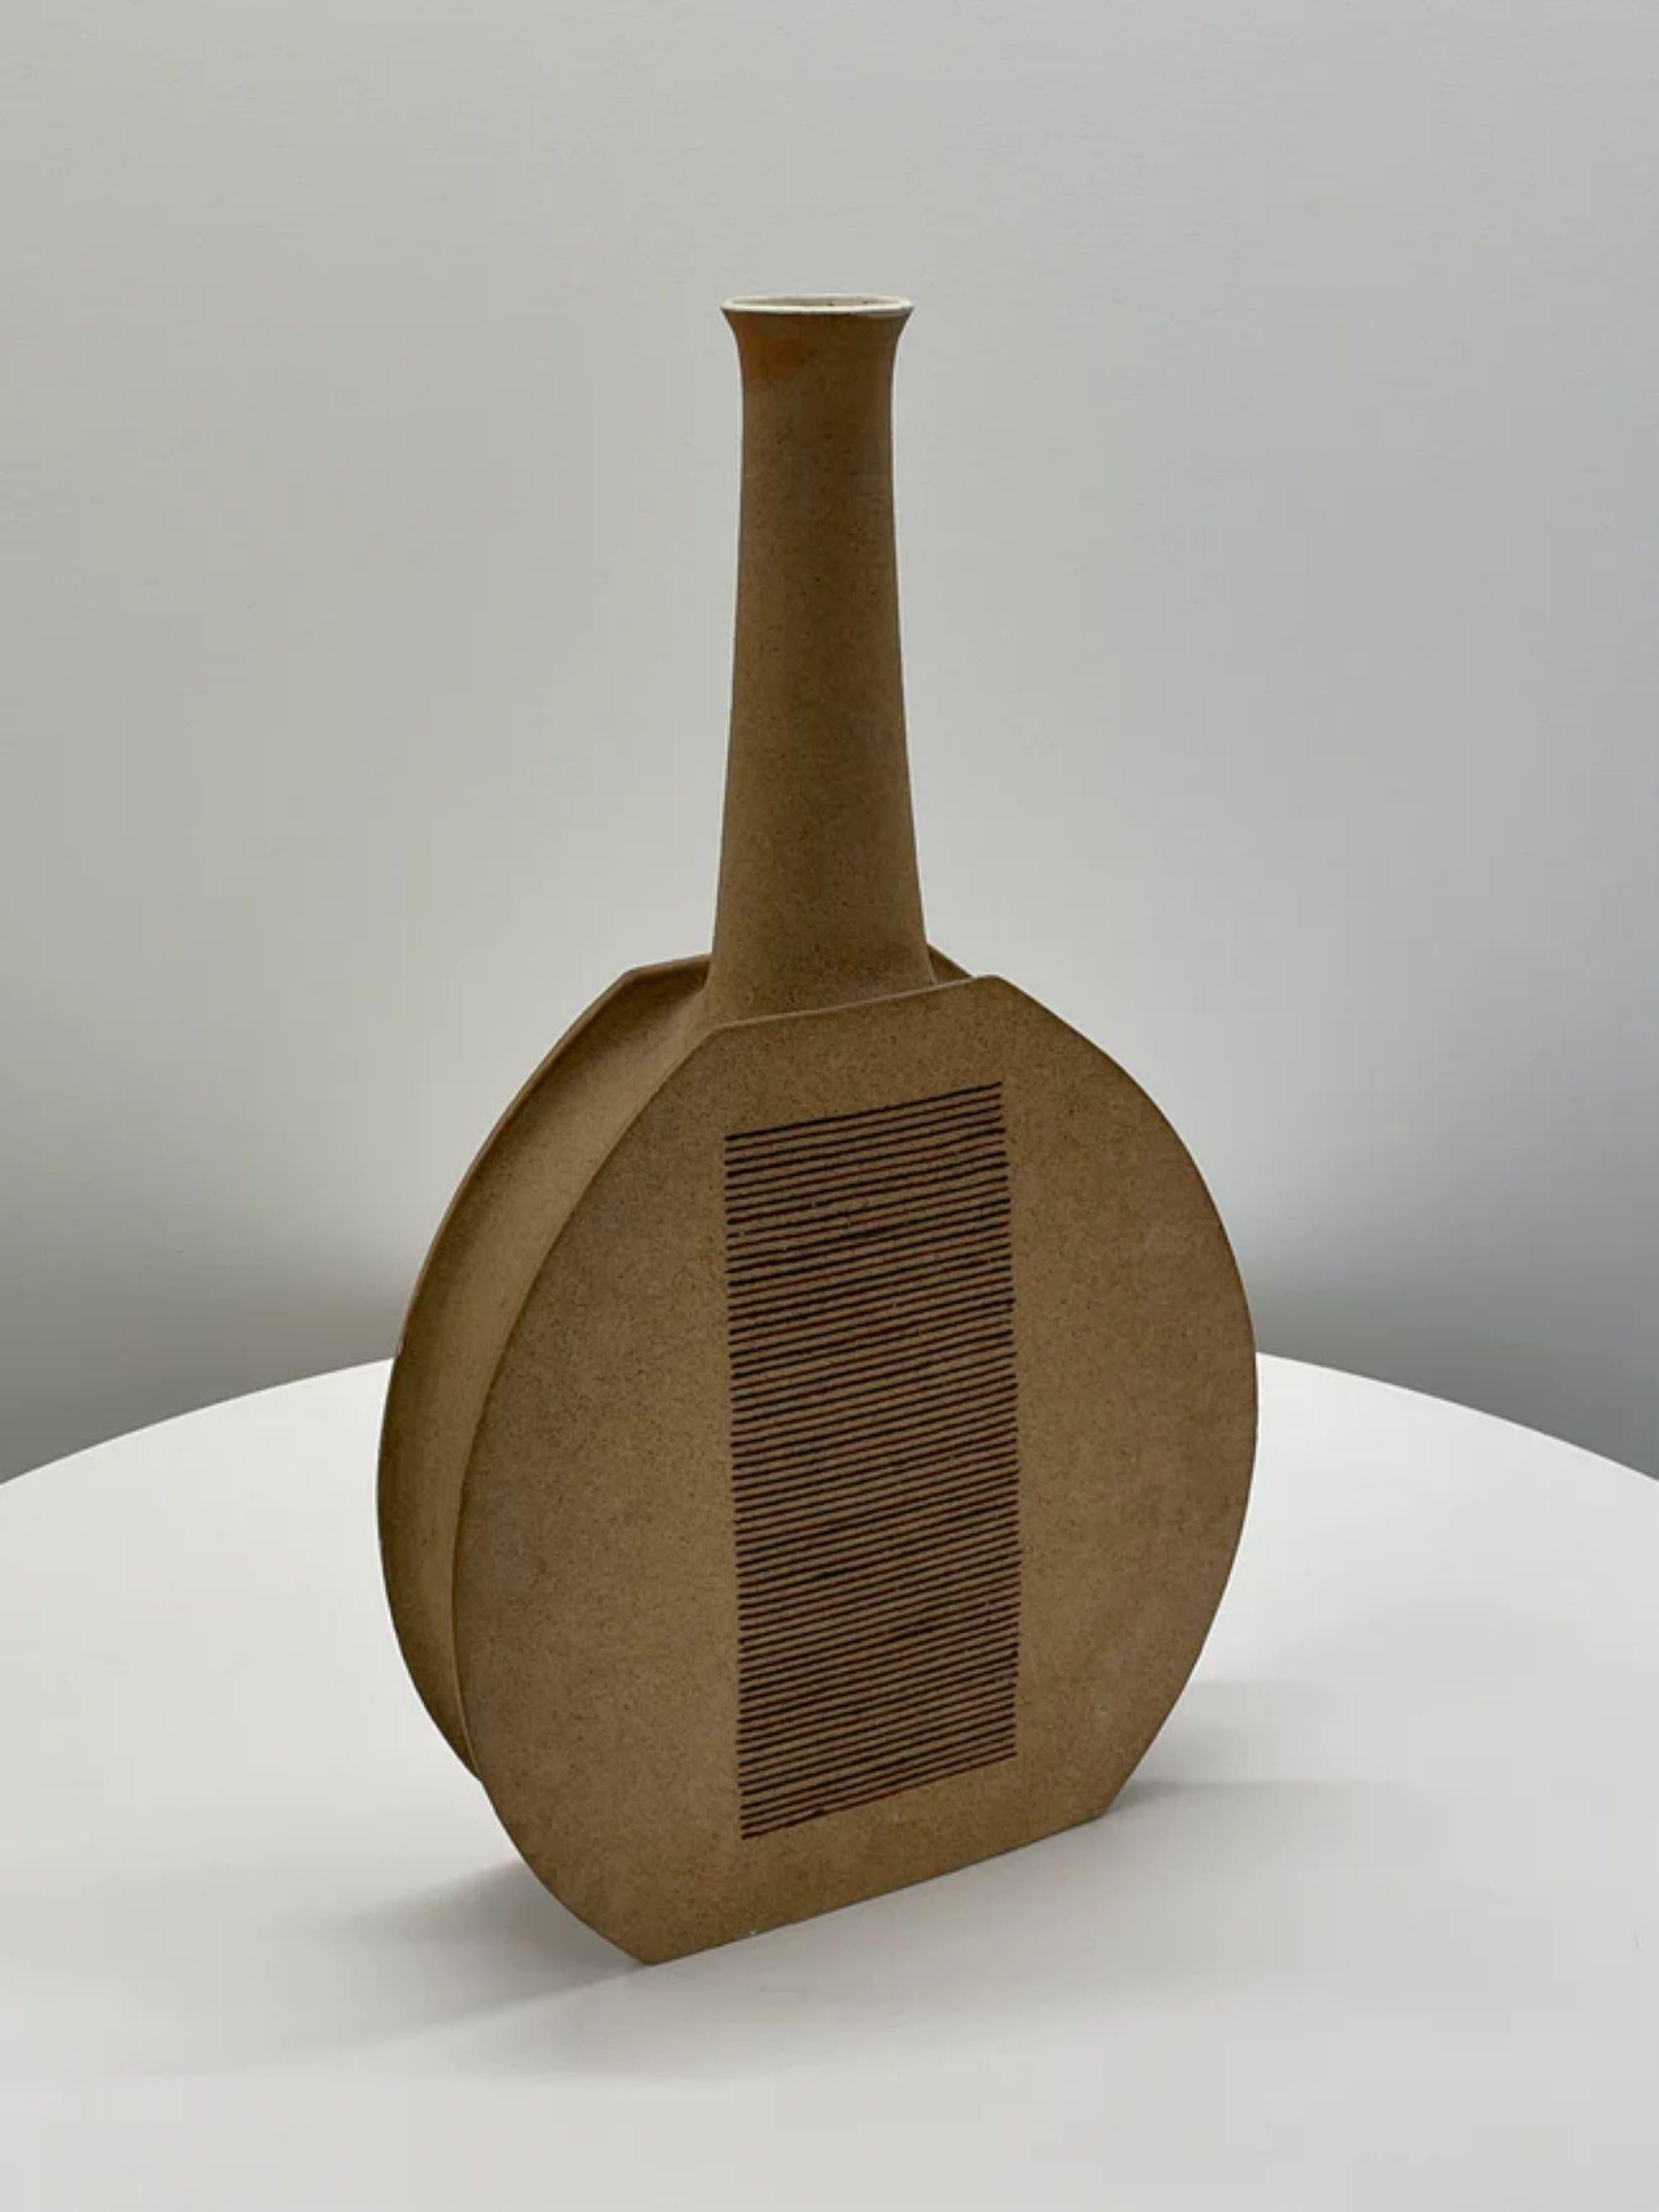 Bruno Gambone monumentales Keramikgefäß, Italien, 1970er Jahre

Zusätzliche Informationen:
MATERIALIEN: Keramisch glasiert
Abmessungen: 27